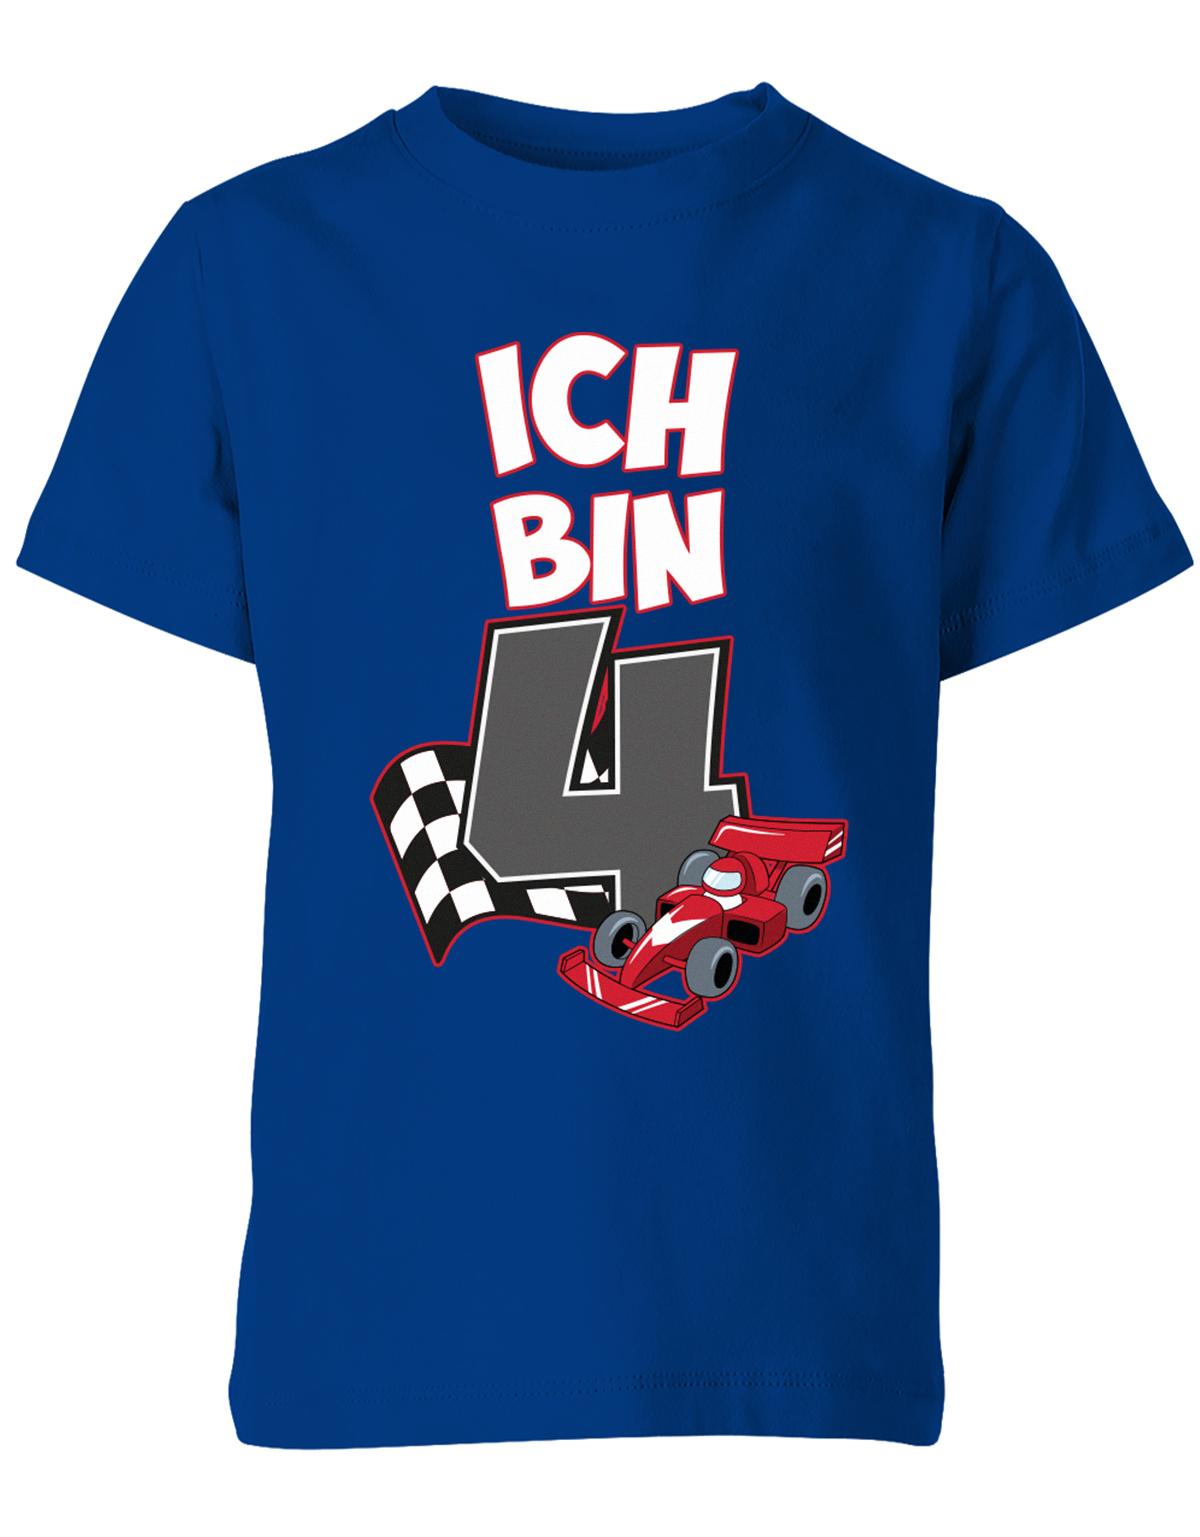 ich-bin-4-autorennen-rennwagen-geburtstag-rennfahrer-kinder-shirt-royalblau